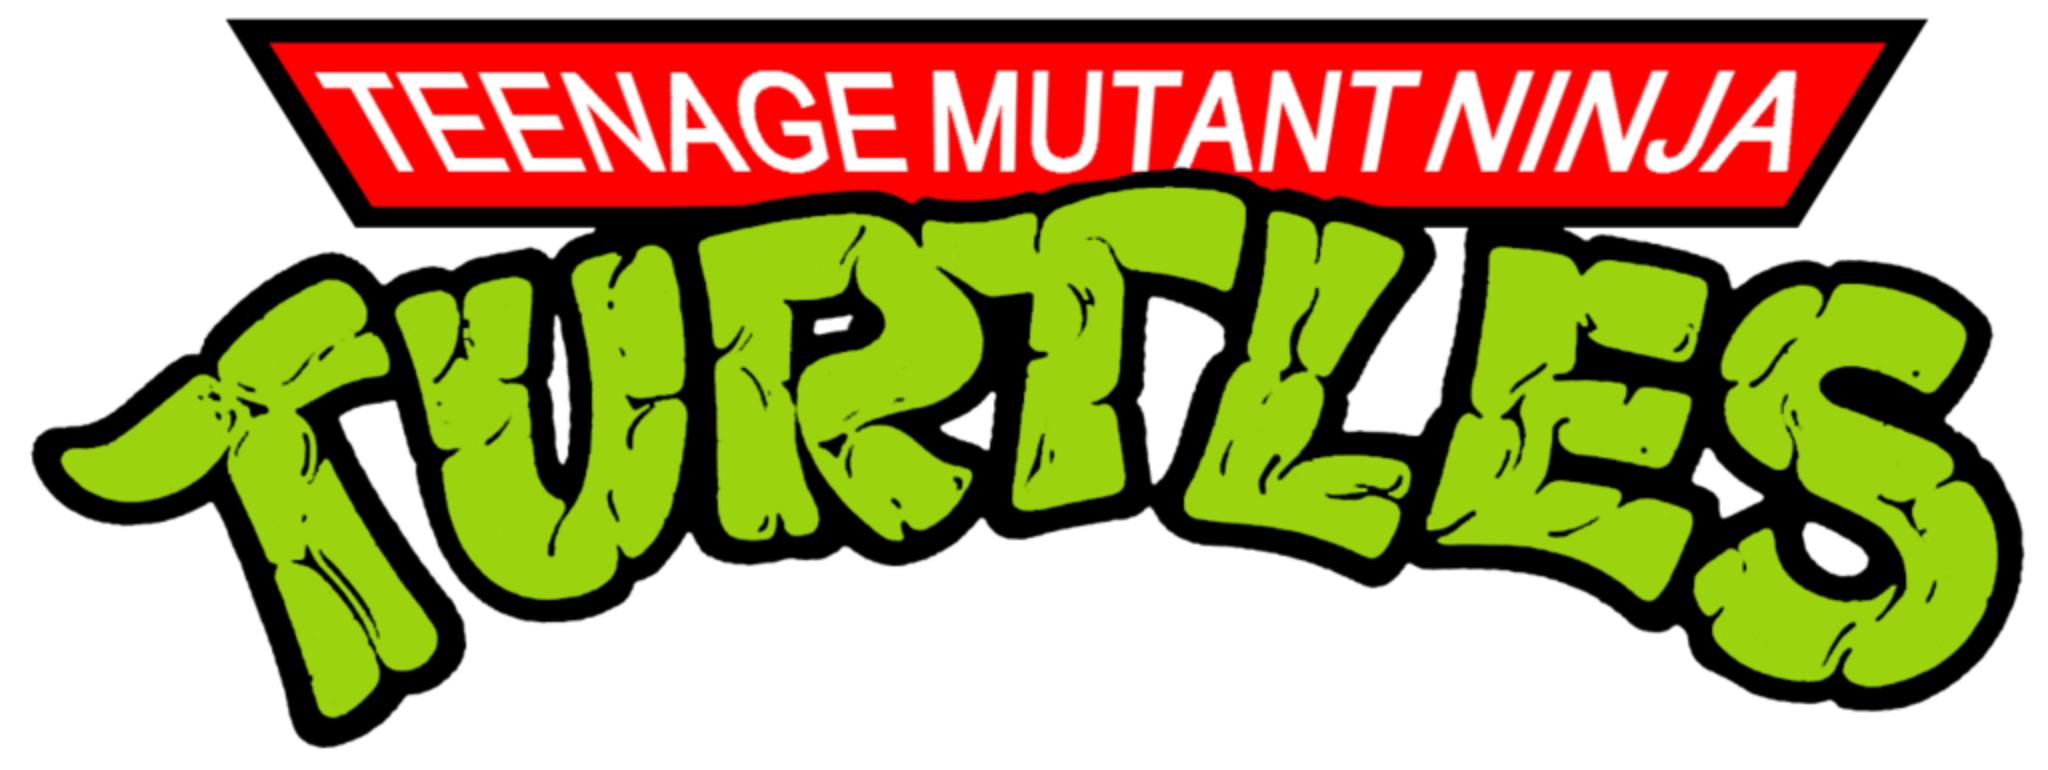 Teenage Mutant Ninja Turtles 1987 Volume 2 (6 DVDs Box Set)